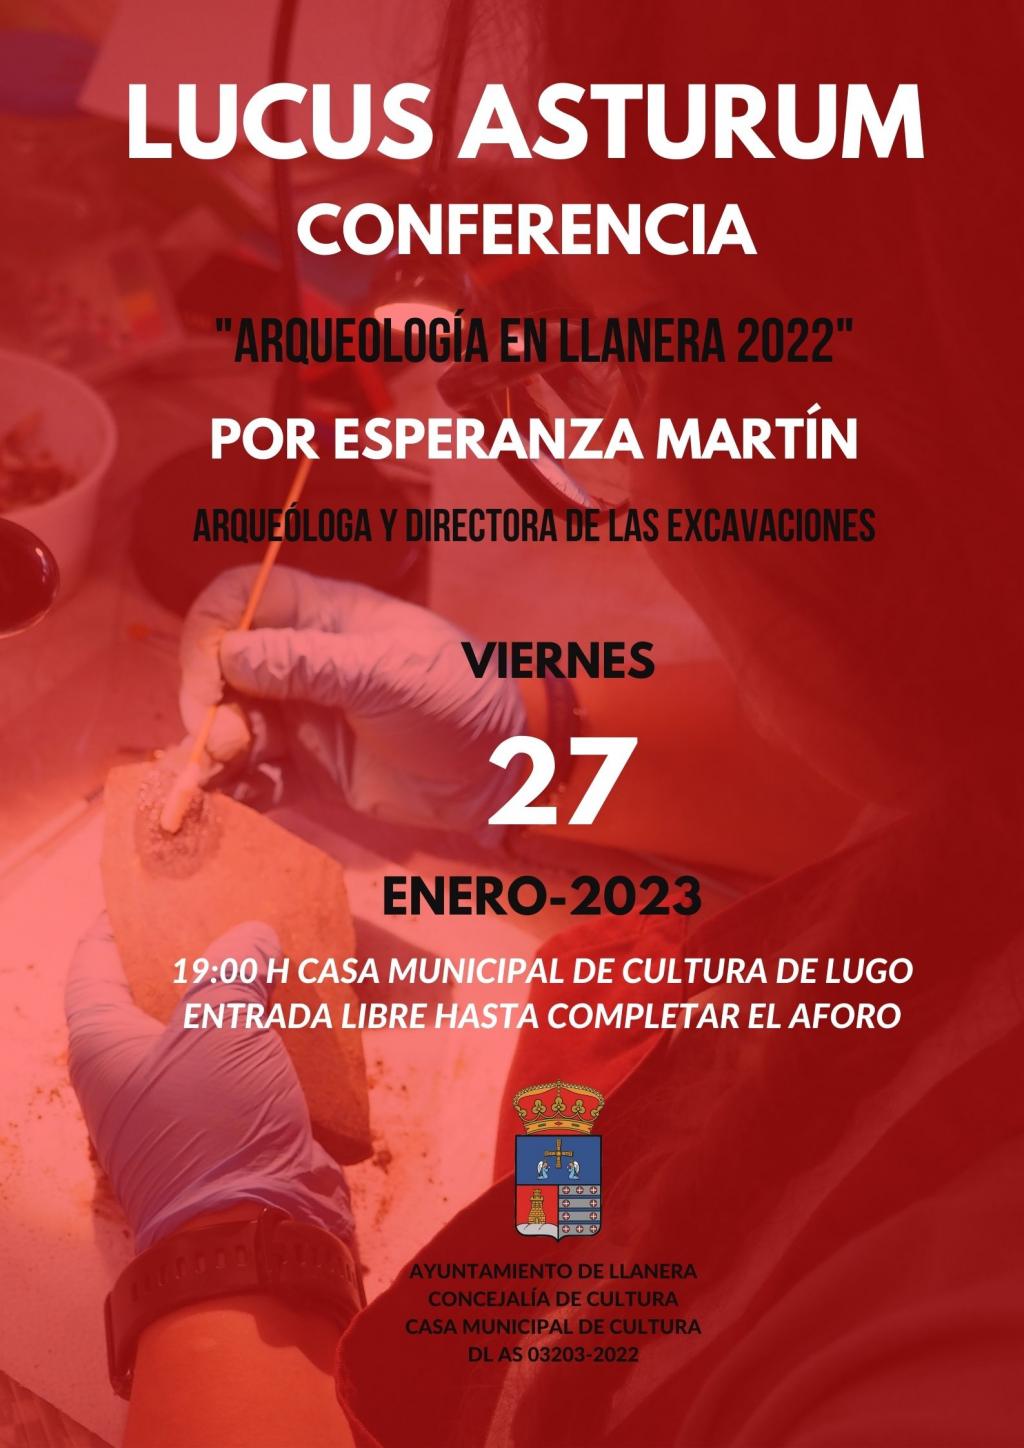 El Tapin - El viernes 27 de enero en la Casa de Cultura de Lugo se celebrará una nueva conferencia sobre el Lucus Asturum